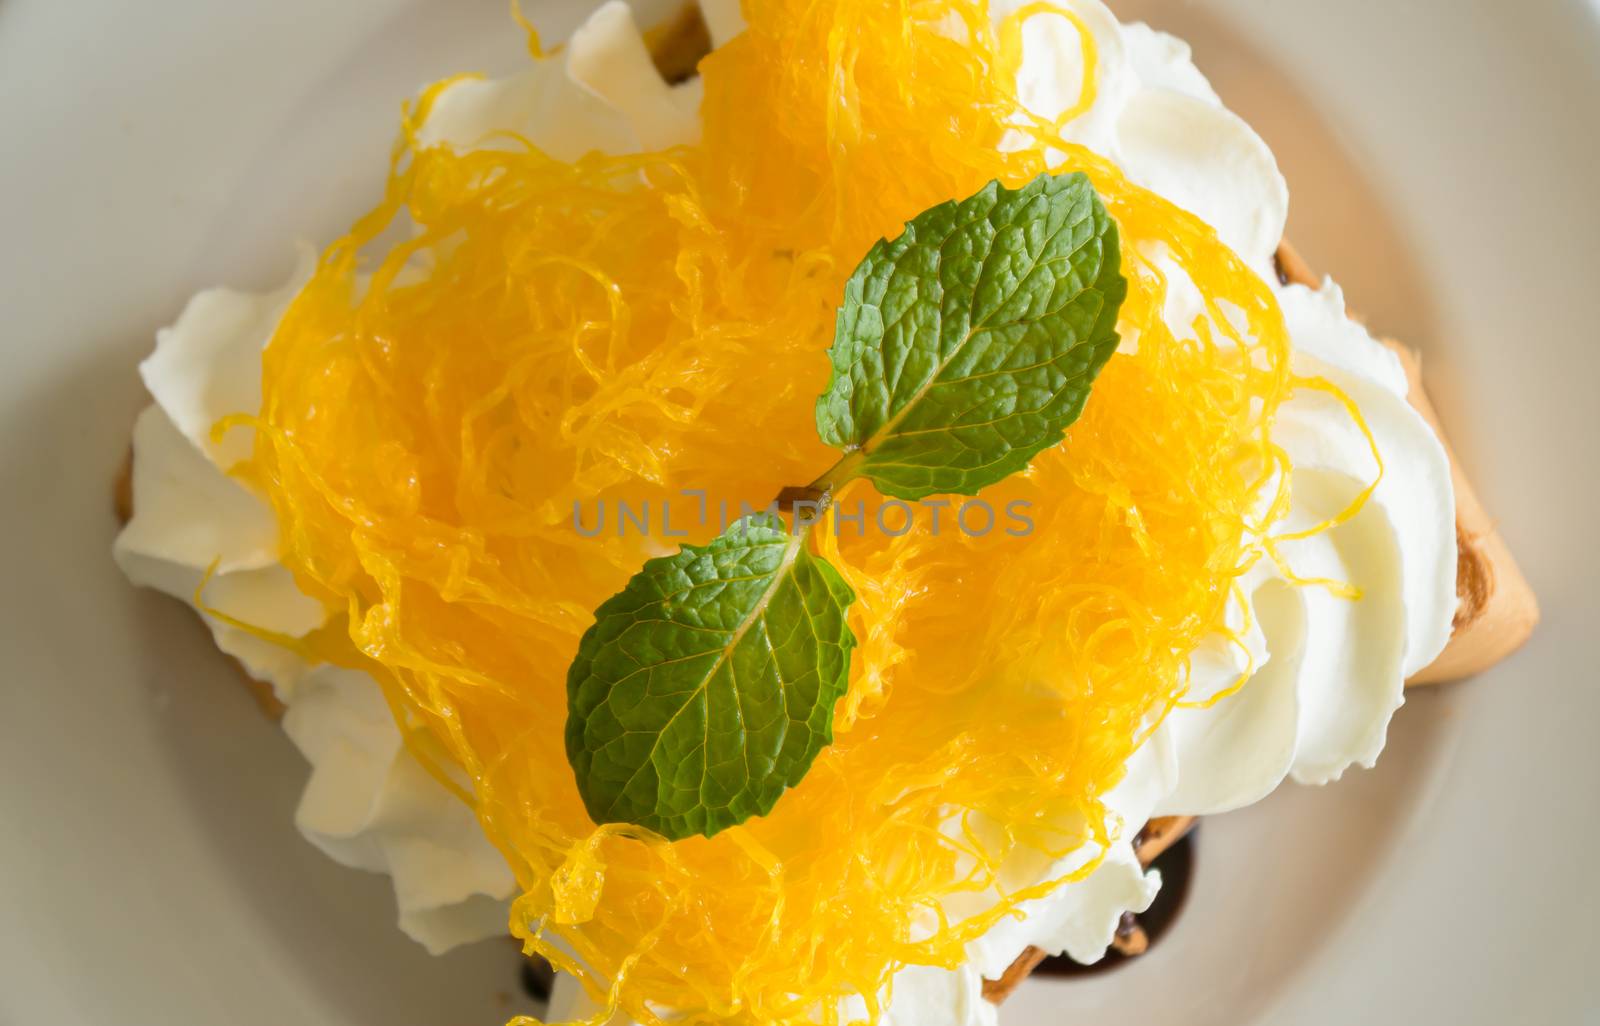 Golden Egg Yolk Threads or Foi Thong Thai Dessert Whipped Cream  by steafpong